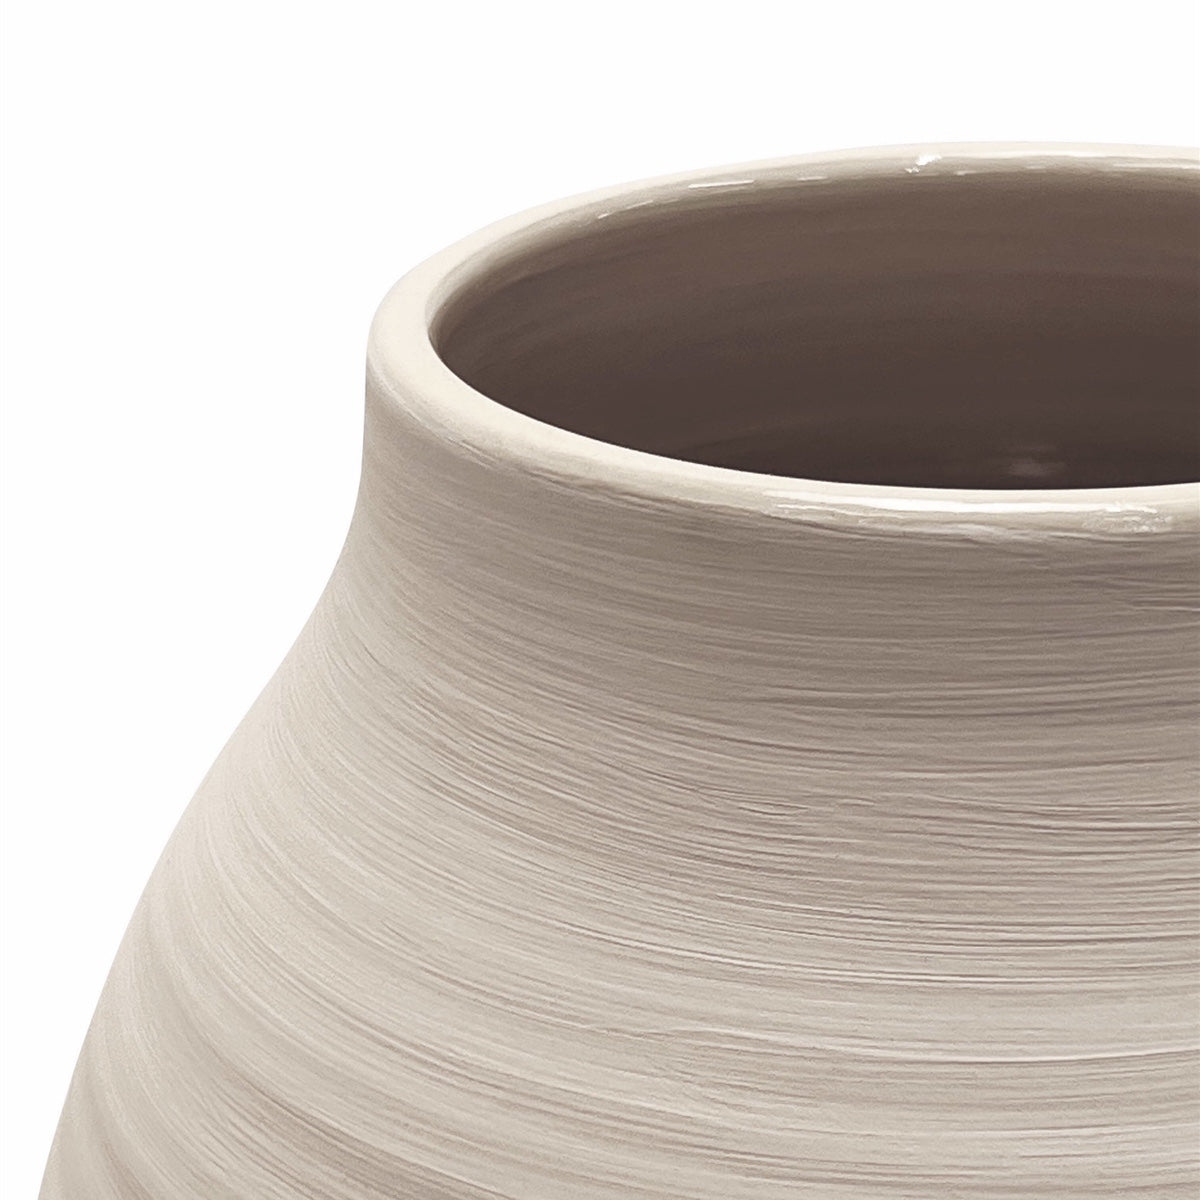 Cloud Keramik Vase Small